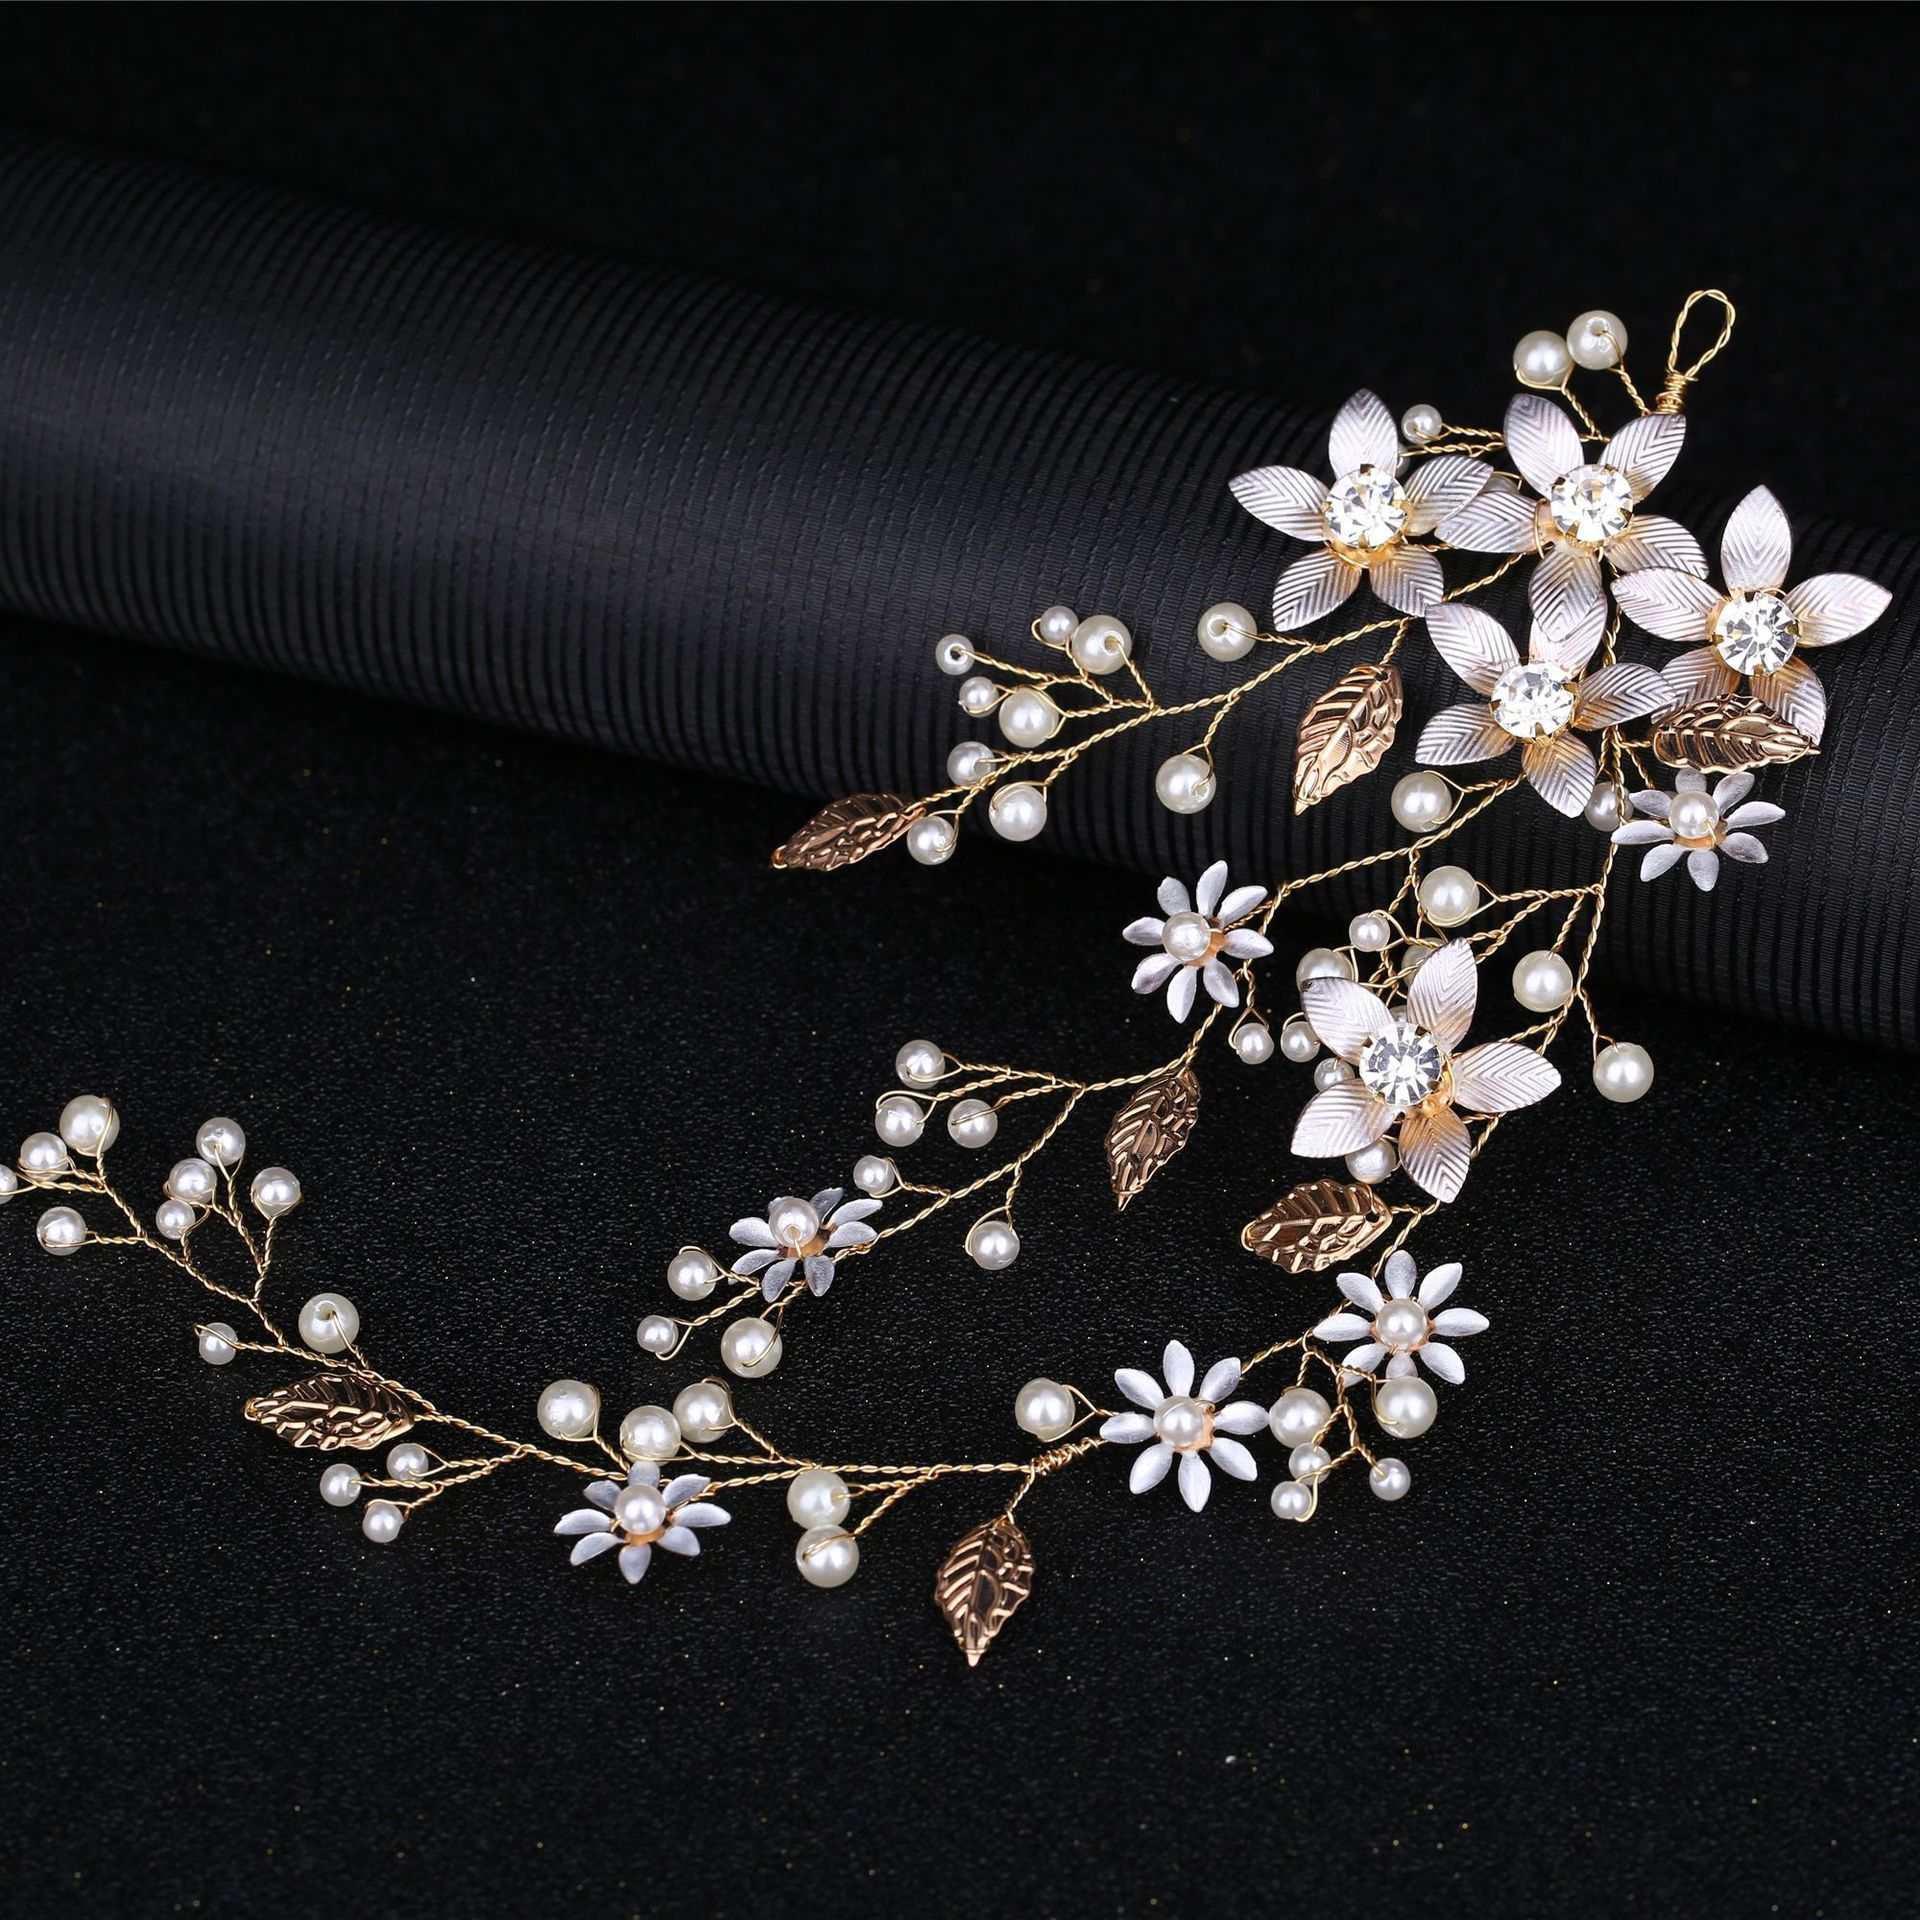 Haarband mit Blatt- und Blumenmotiv, für Hochzeitskleider